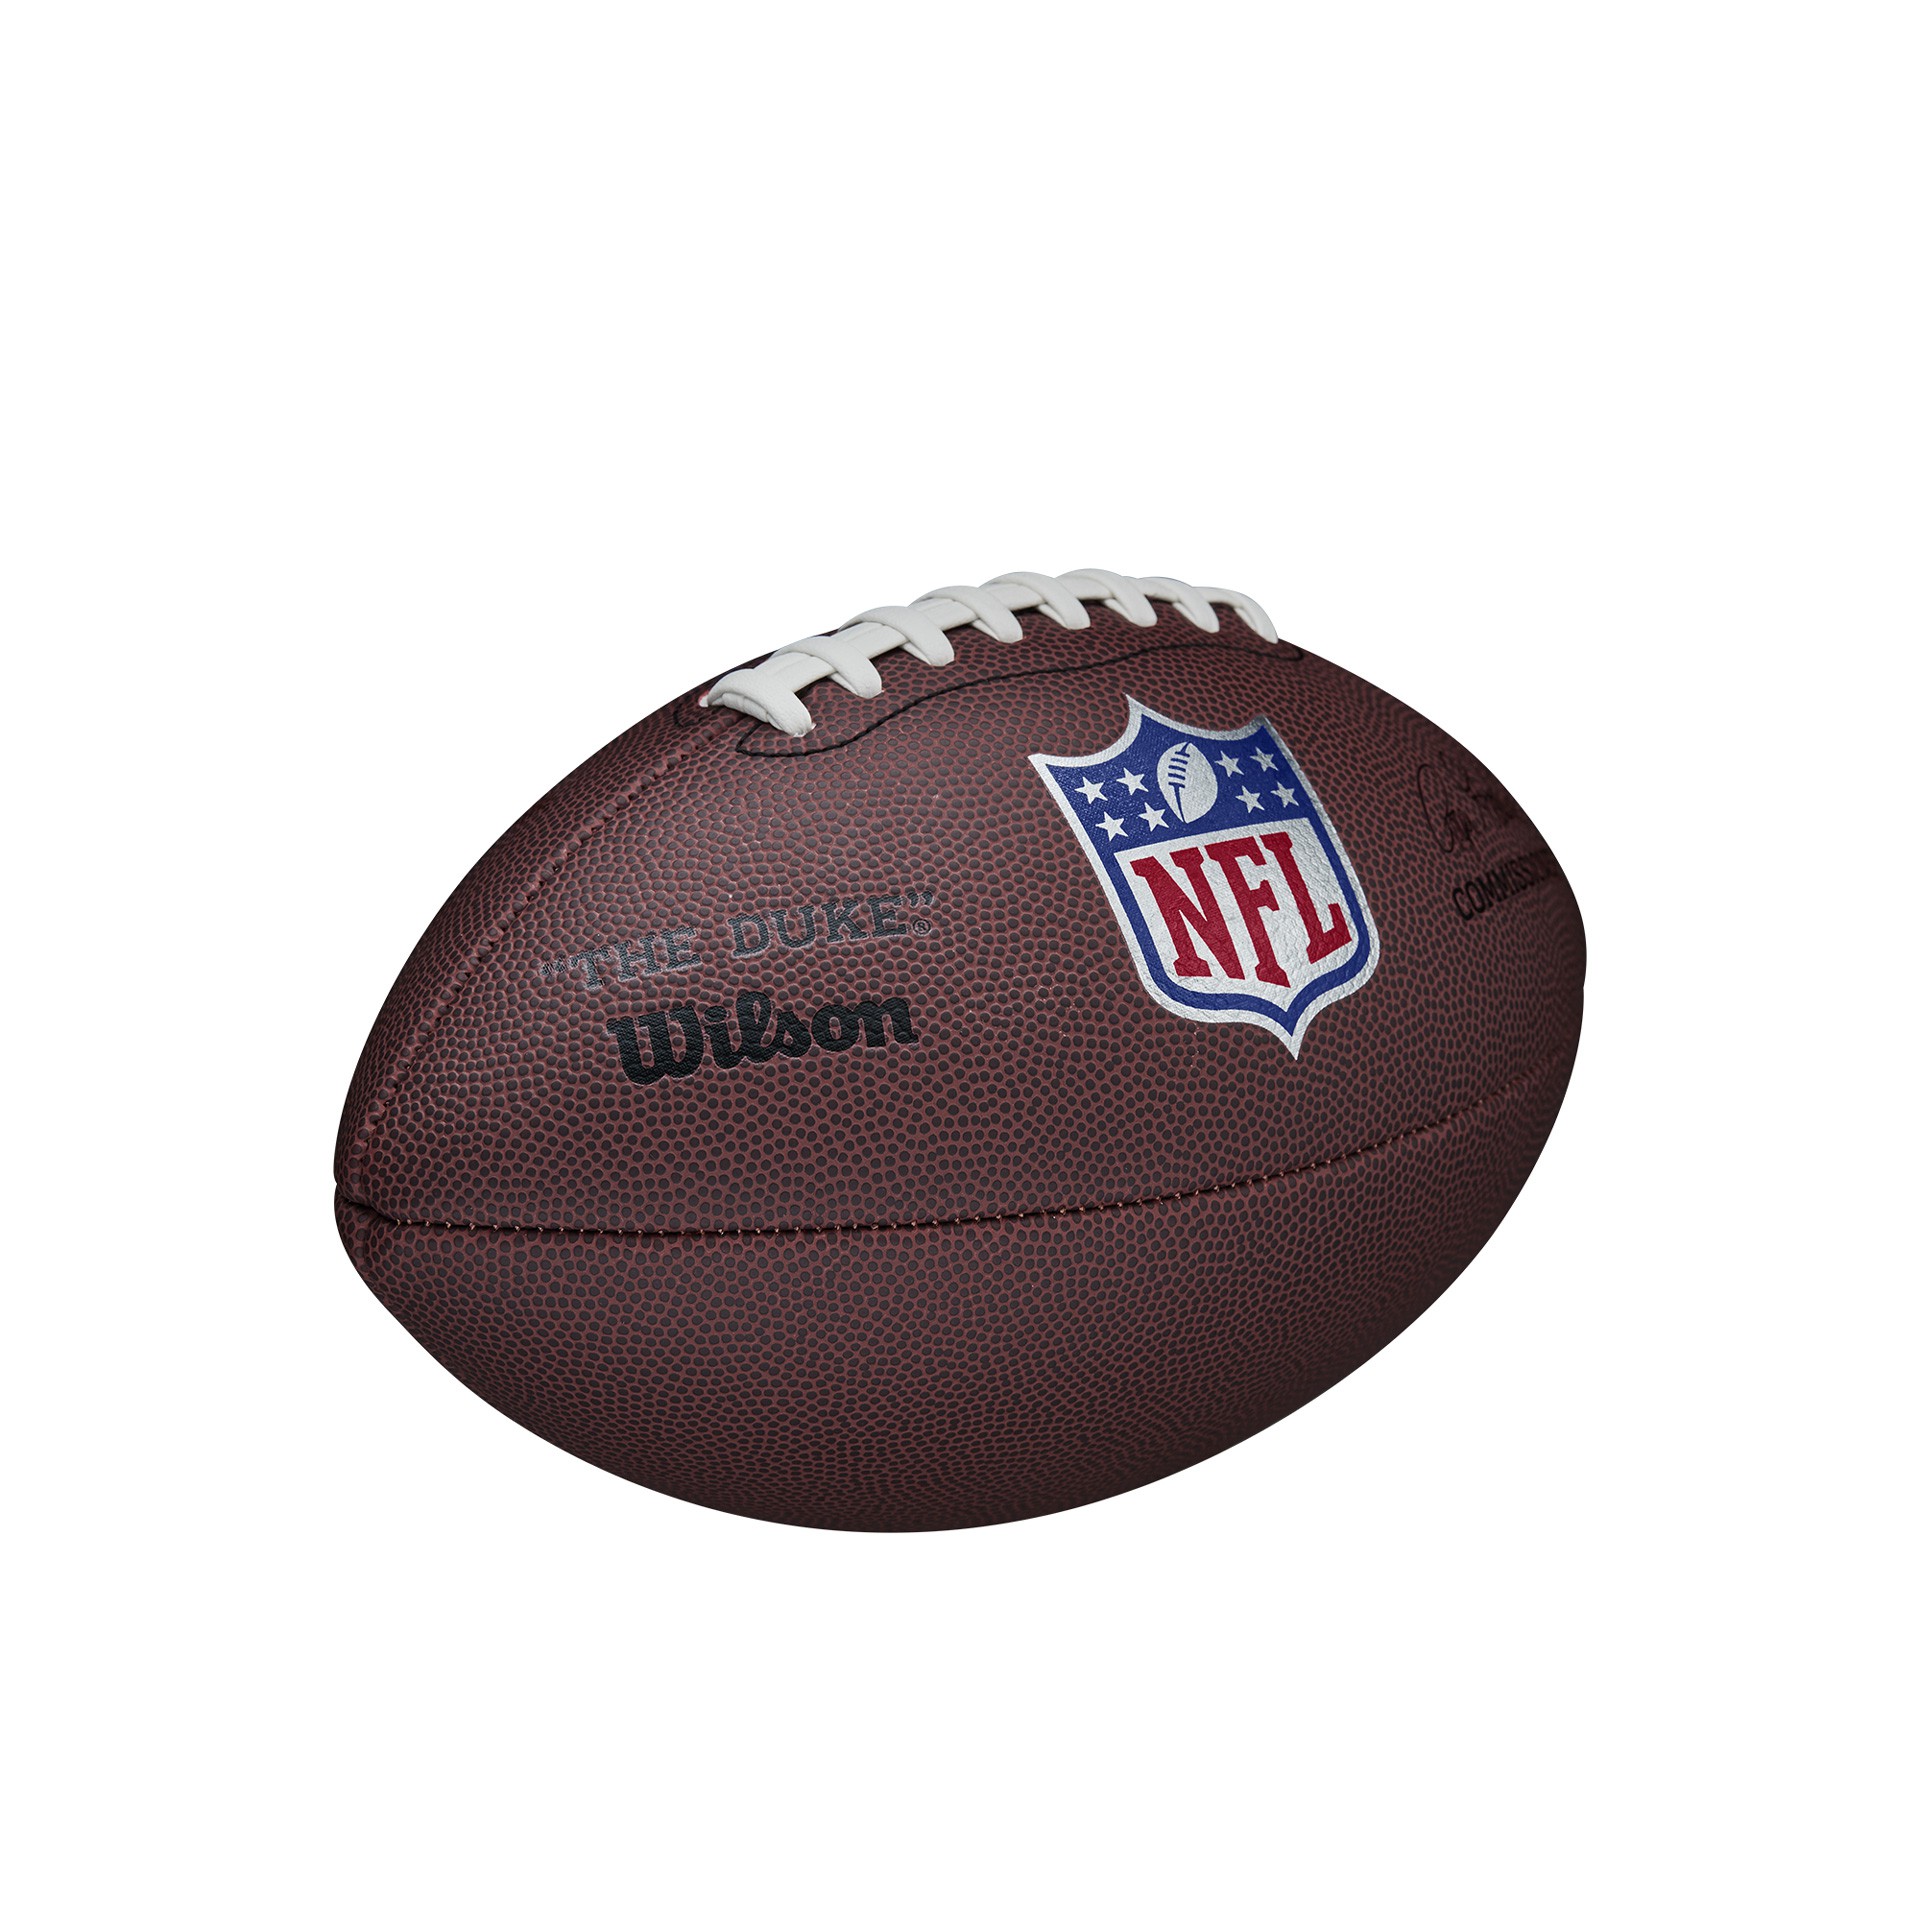 balón fútbol americano wilson nfl duke réplica – con expositor – 6